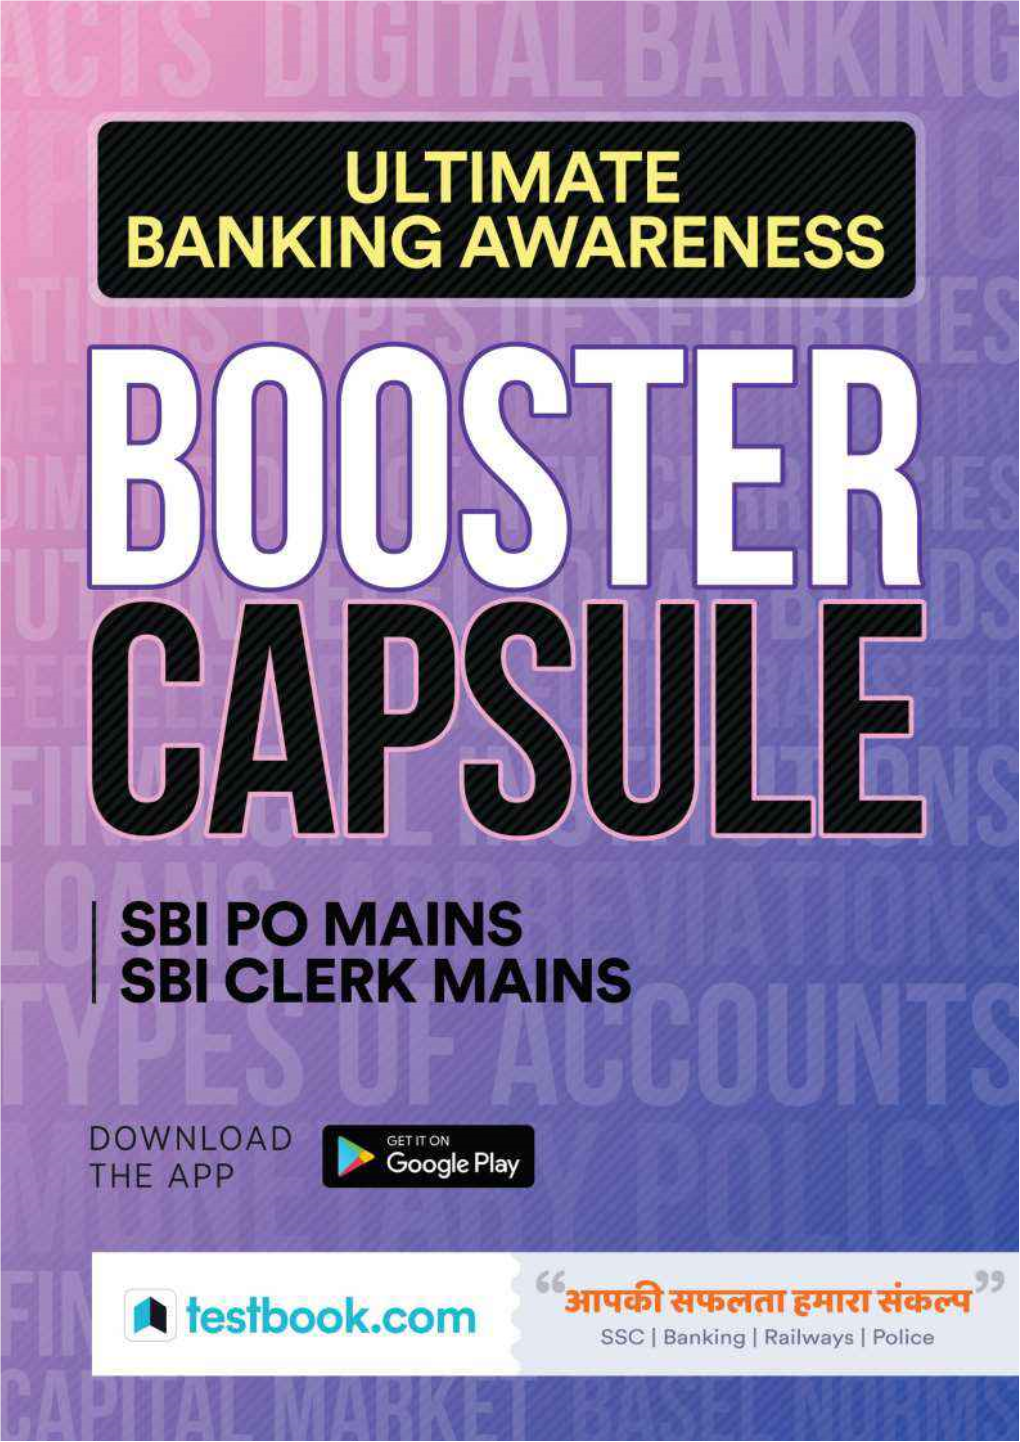 Ultimate Banking Awareness Booster Capsule June 2018